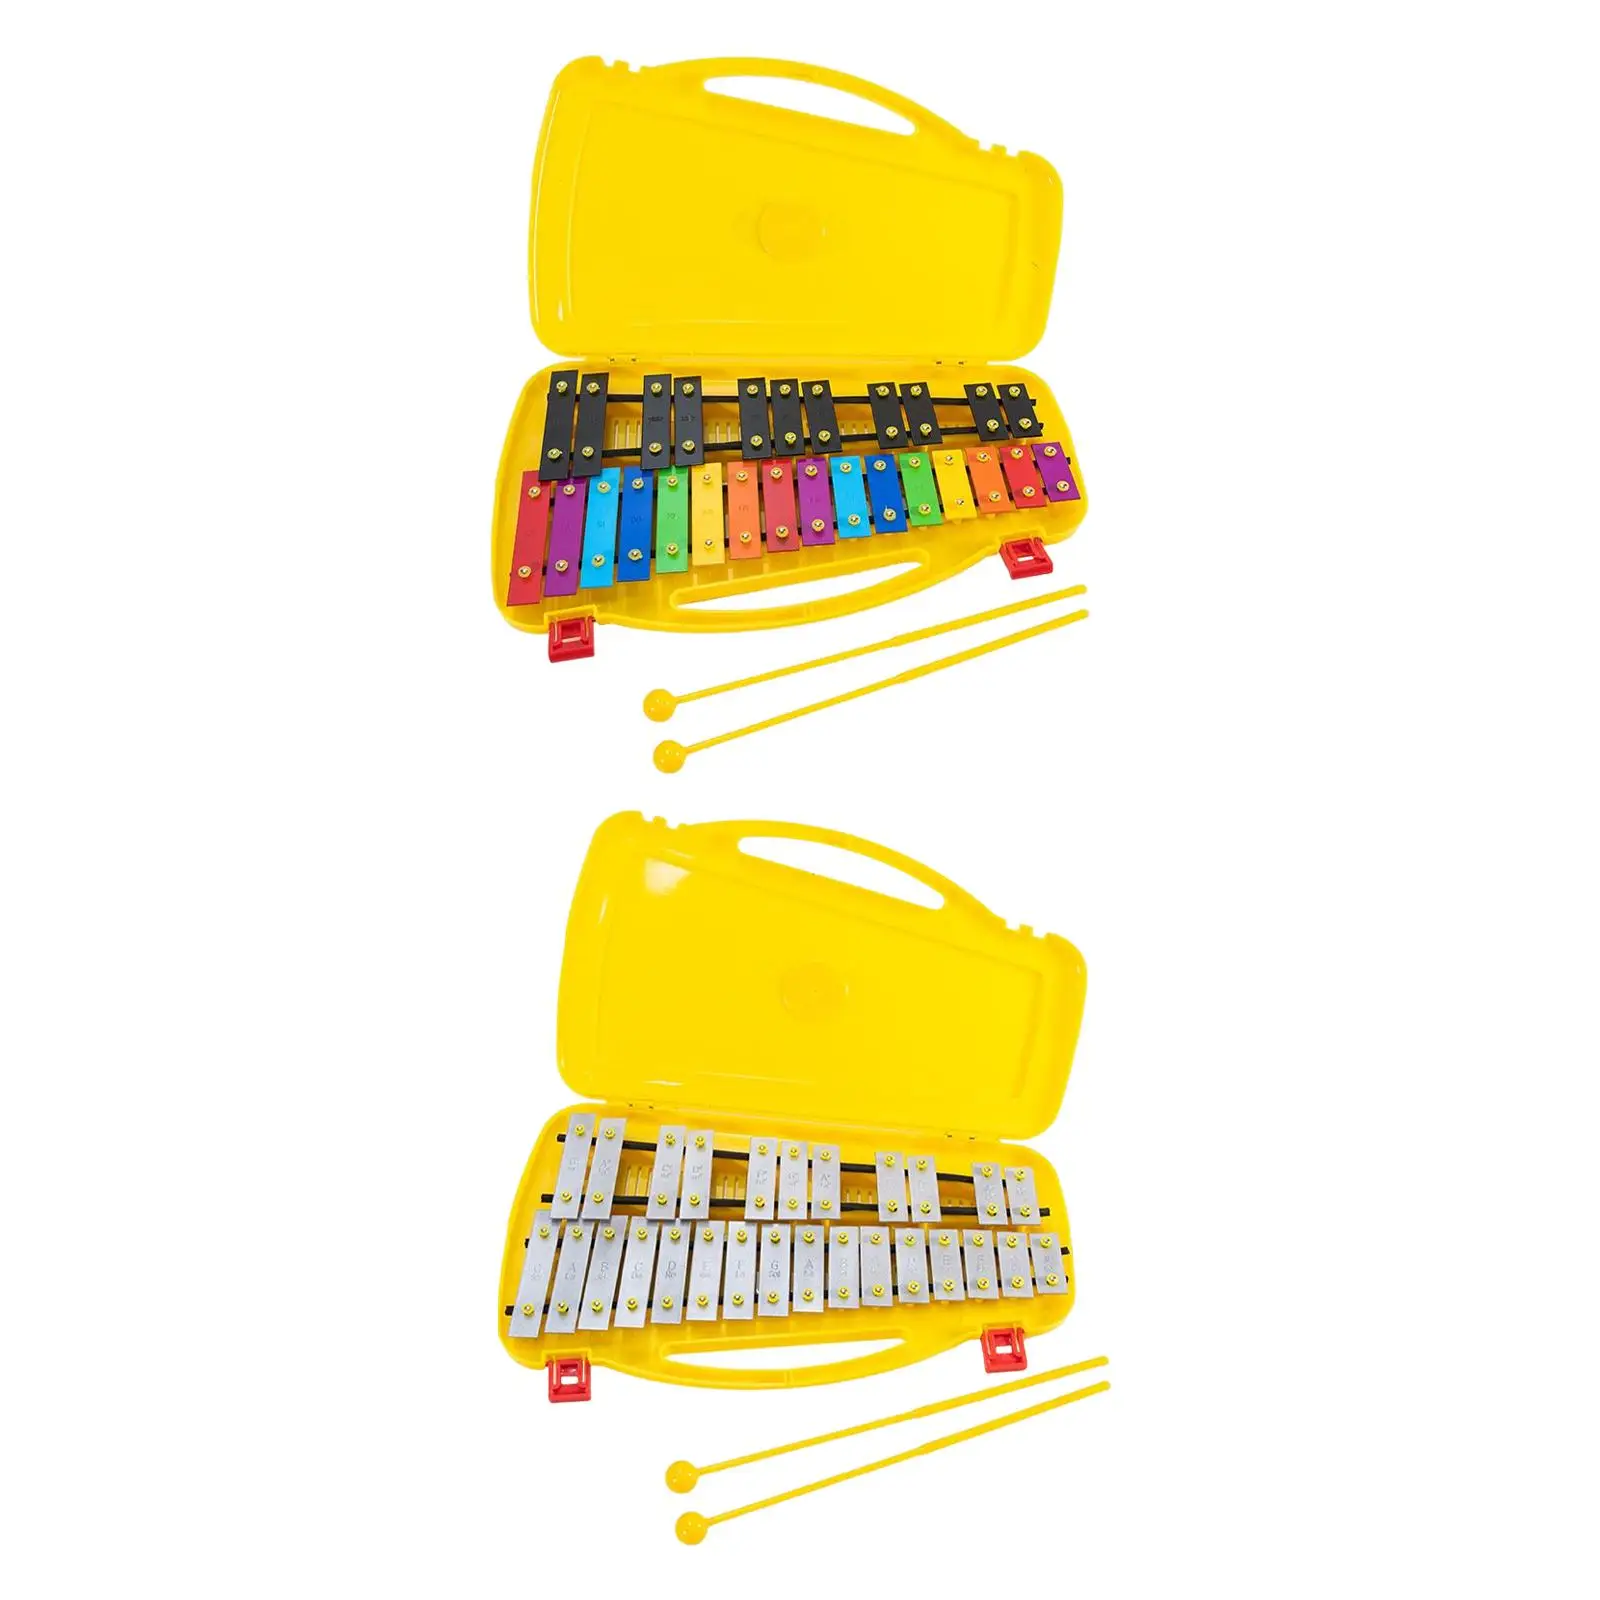 

Ксилофон 27 Note и два малета для взрослых и малышей, перкуссионные инструменты